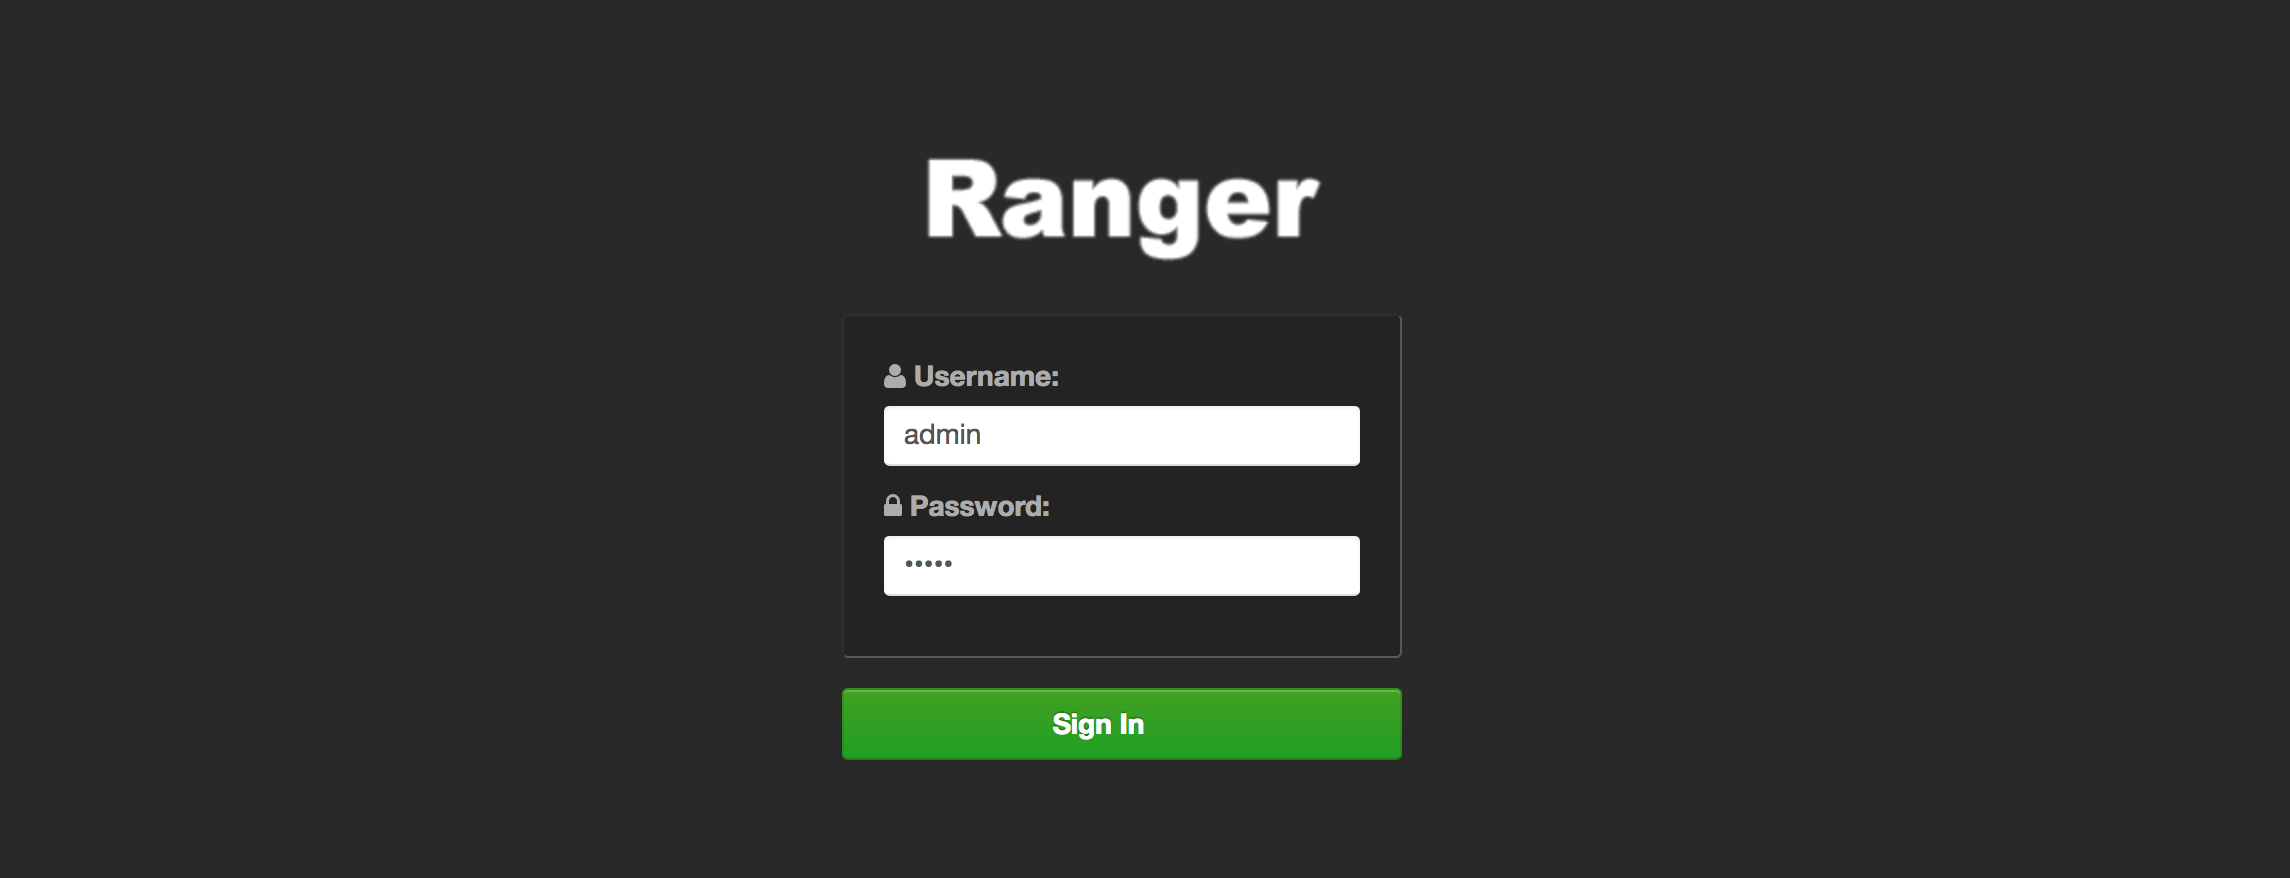 Ranger 控制台